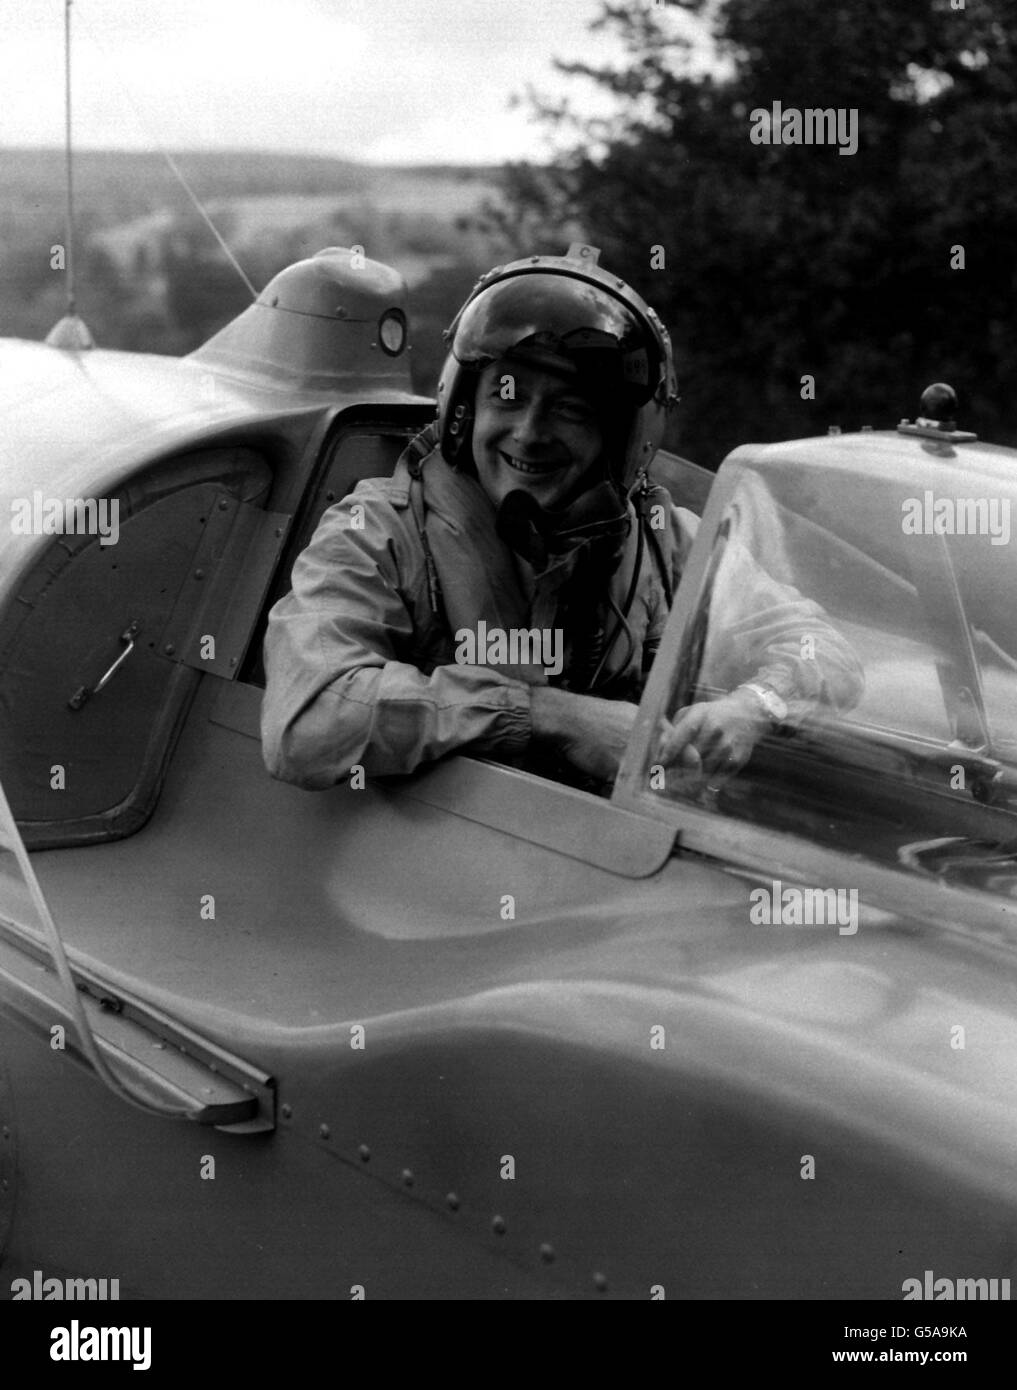 DONALD CAMPBELL 1958: Donald Campbell im Cockpit seines Jet-betriebenen Wasserflugzeuges 'Bluebird' am Lake Coniston, Cumberland, wo er versuchen soll, seinen eigenen Weltrekord mit einer Geschwindigkeit von 239,07 km/h auf 2250 km/h zu erhöhen. Stockfoto